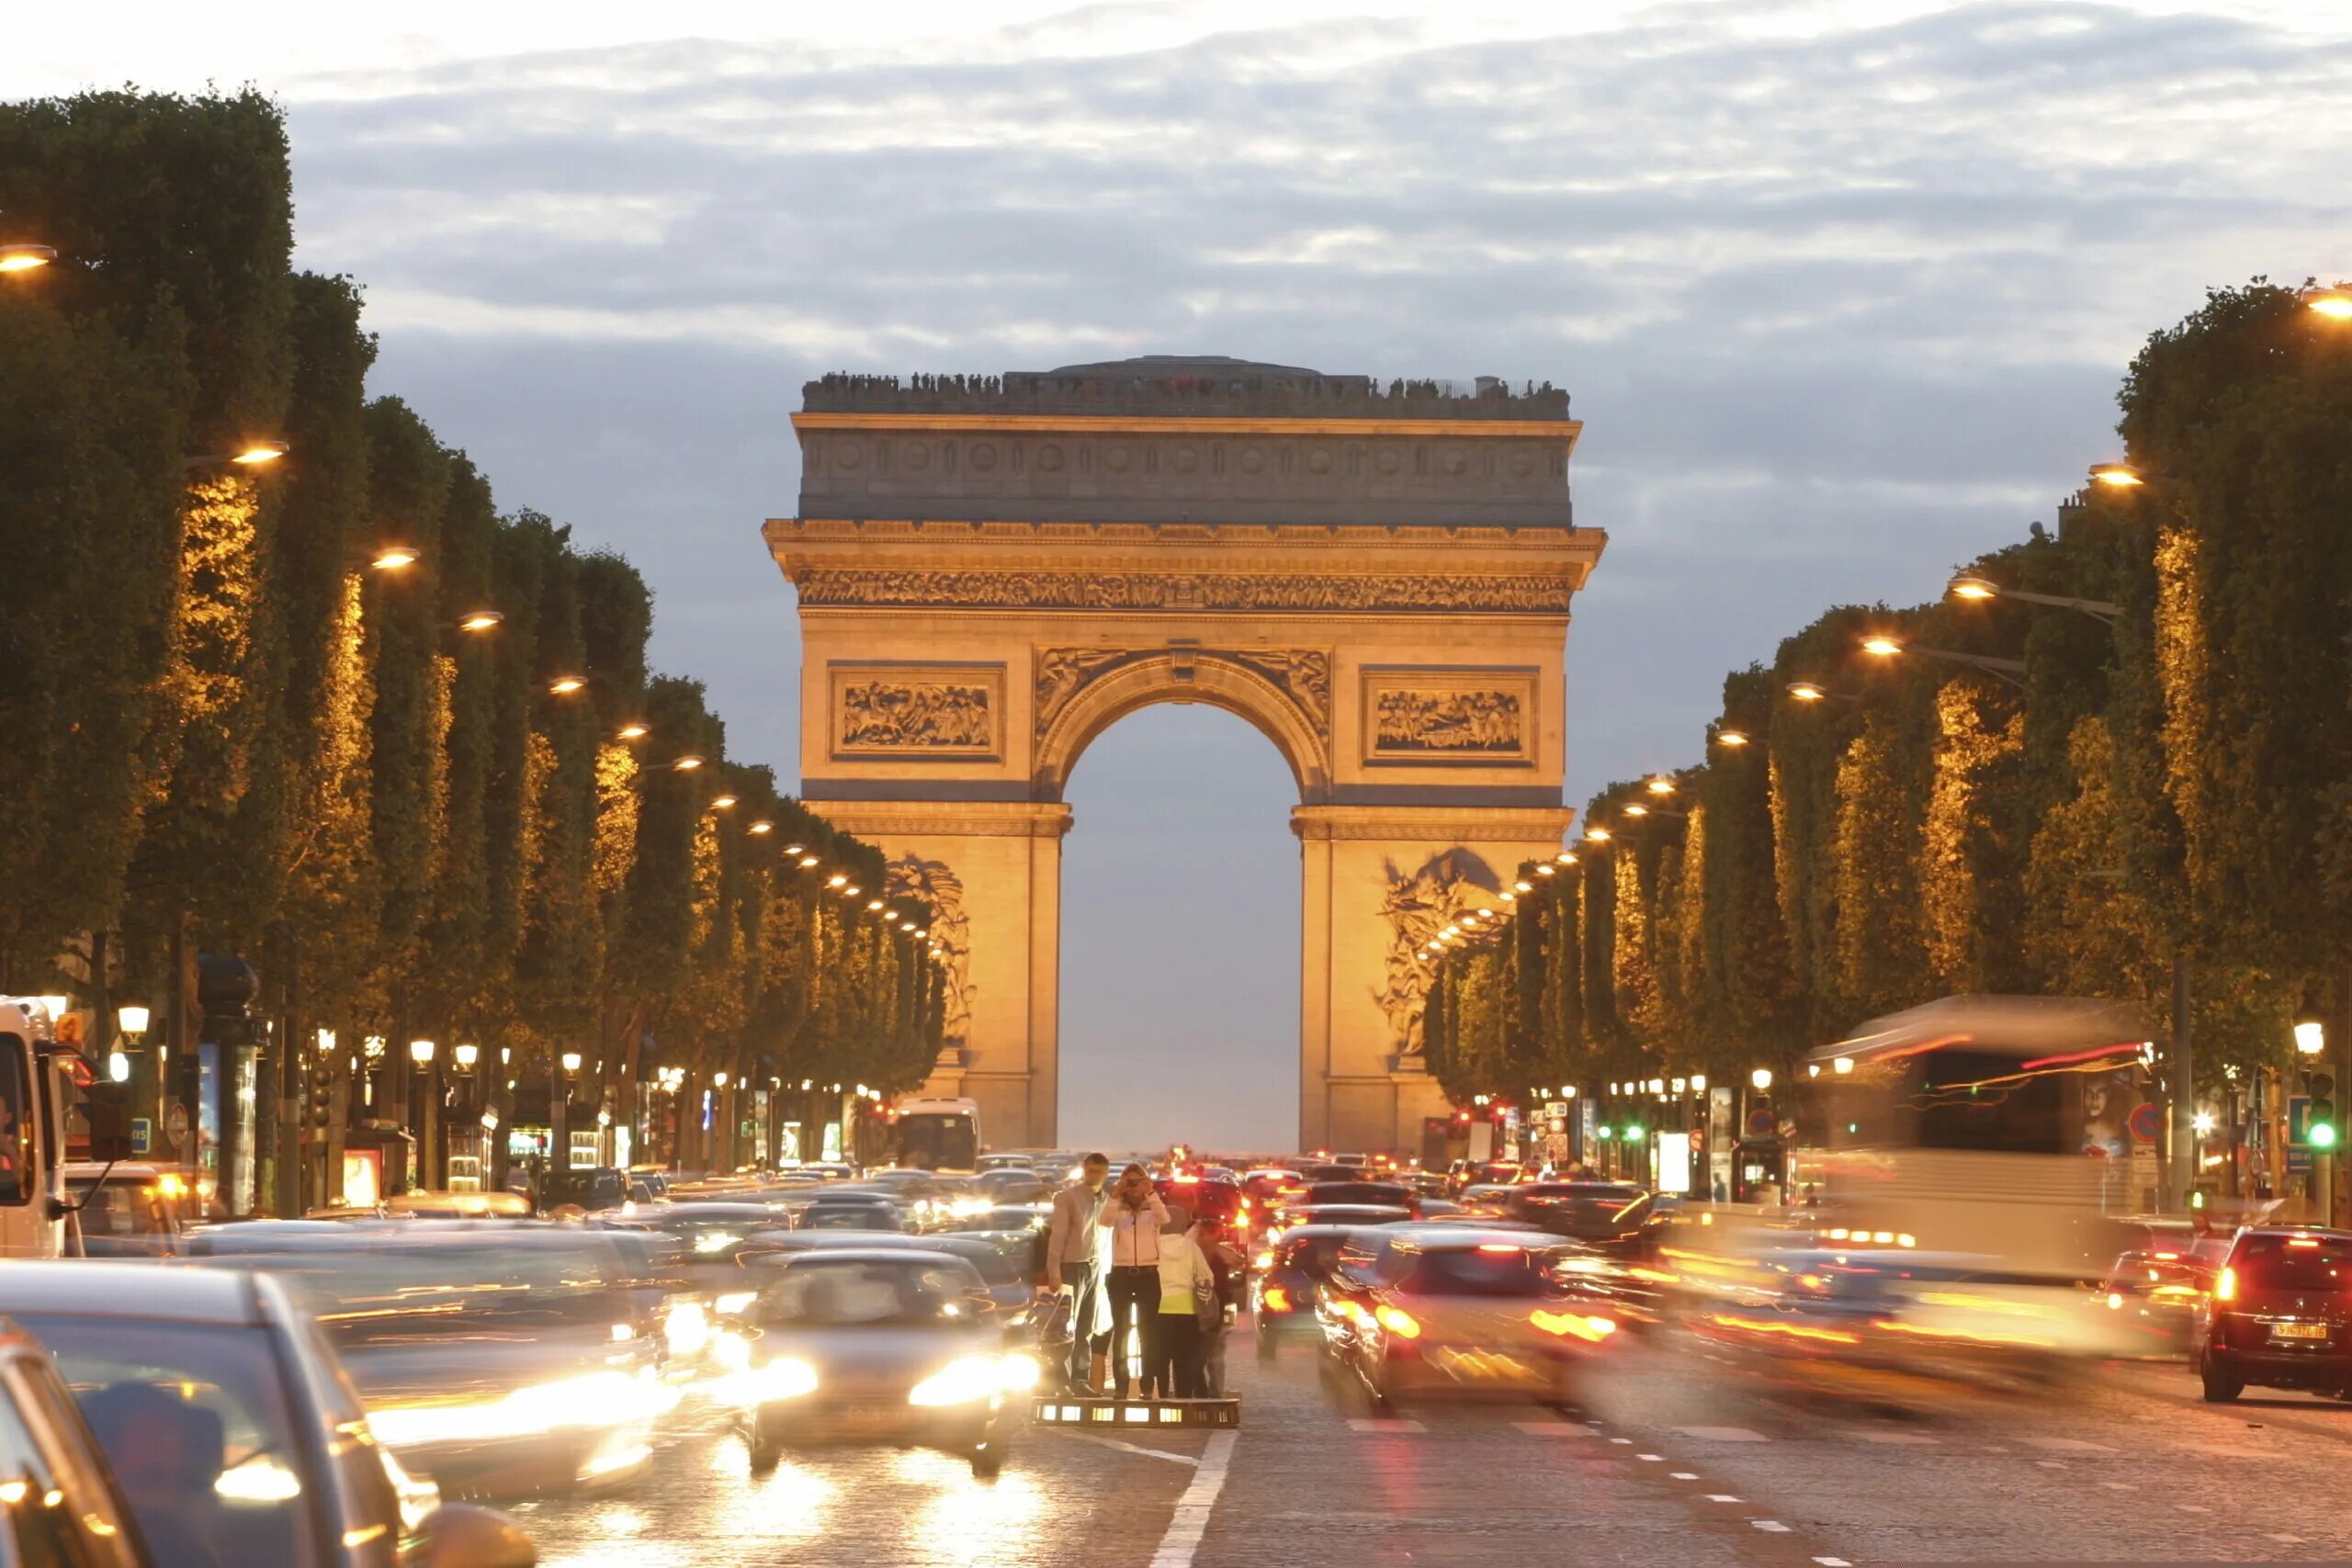 Франция изменилась. Франция Париж Елисейские поля. Улица Елисейские поля в Париже. Главная улица Парижа Елисейские поля. Достопримечательности Парижа Елисейские поля.